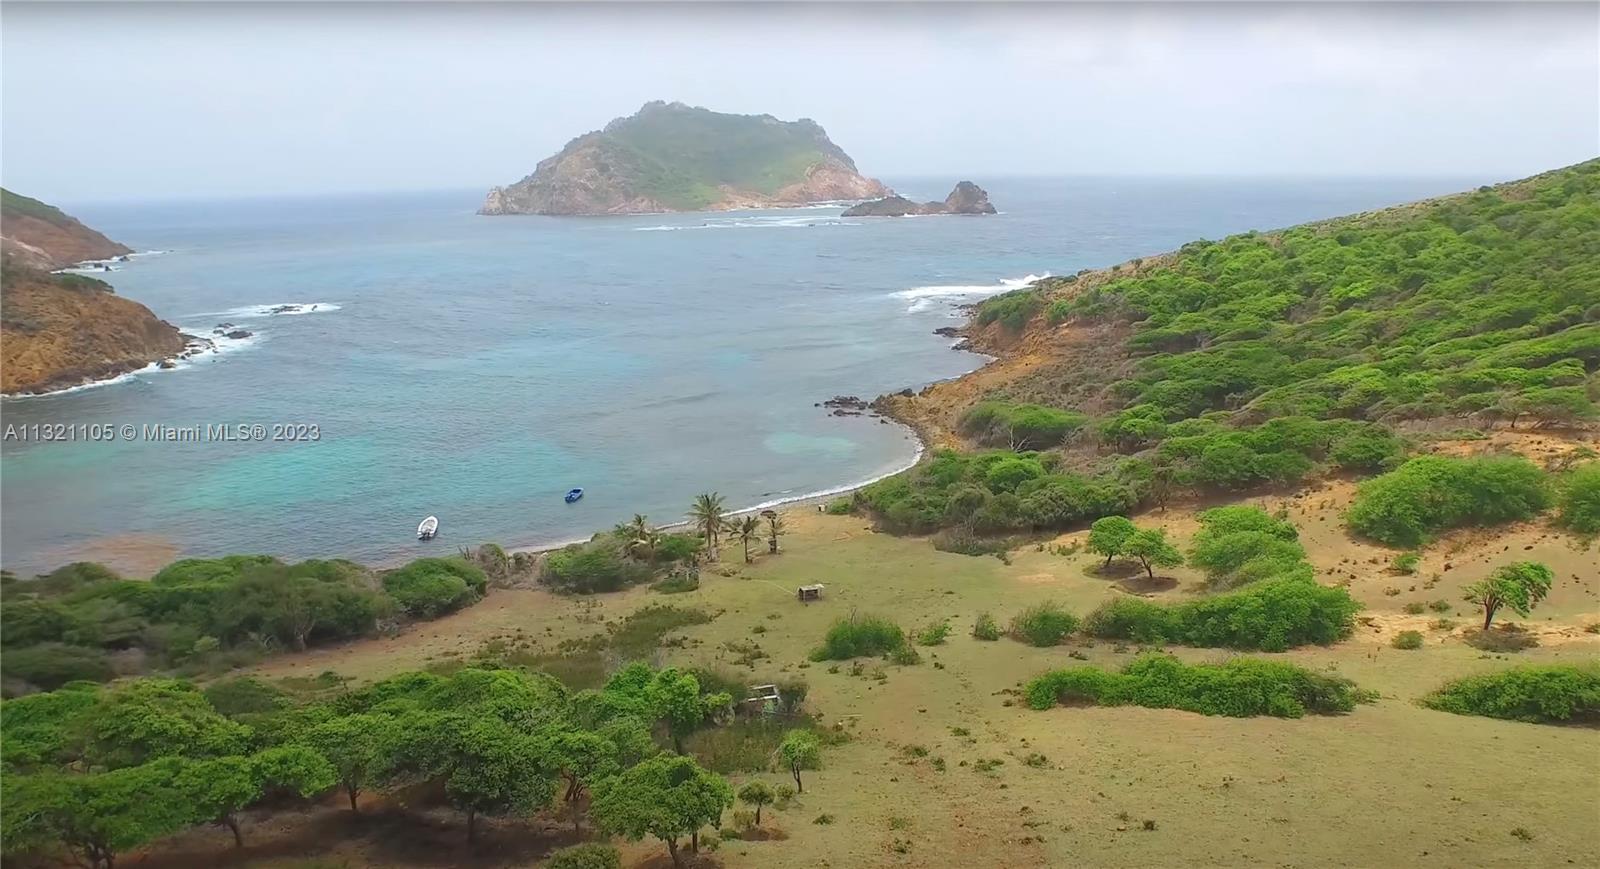 imagen 3 de Baliceaux: Christie’s vende una isla paradisíaca en el Caribe.